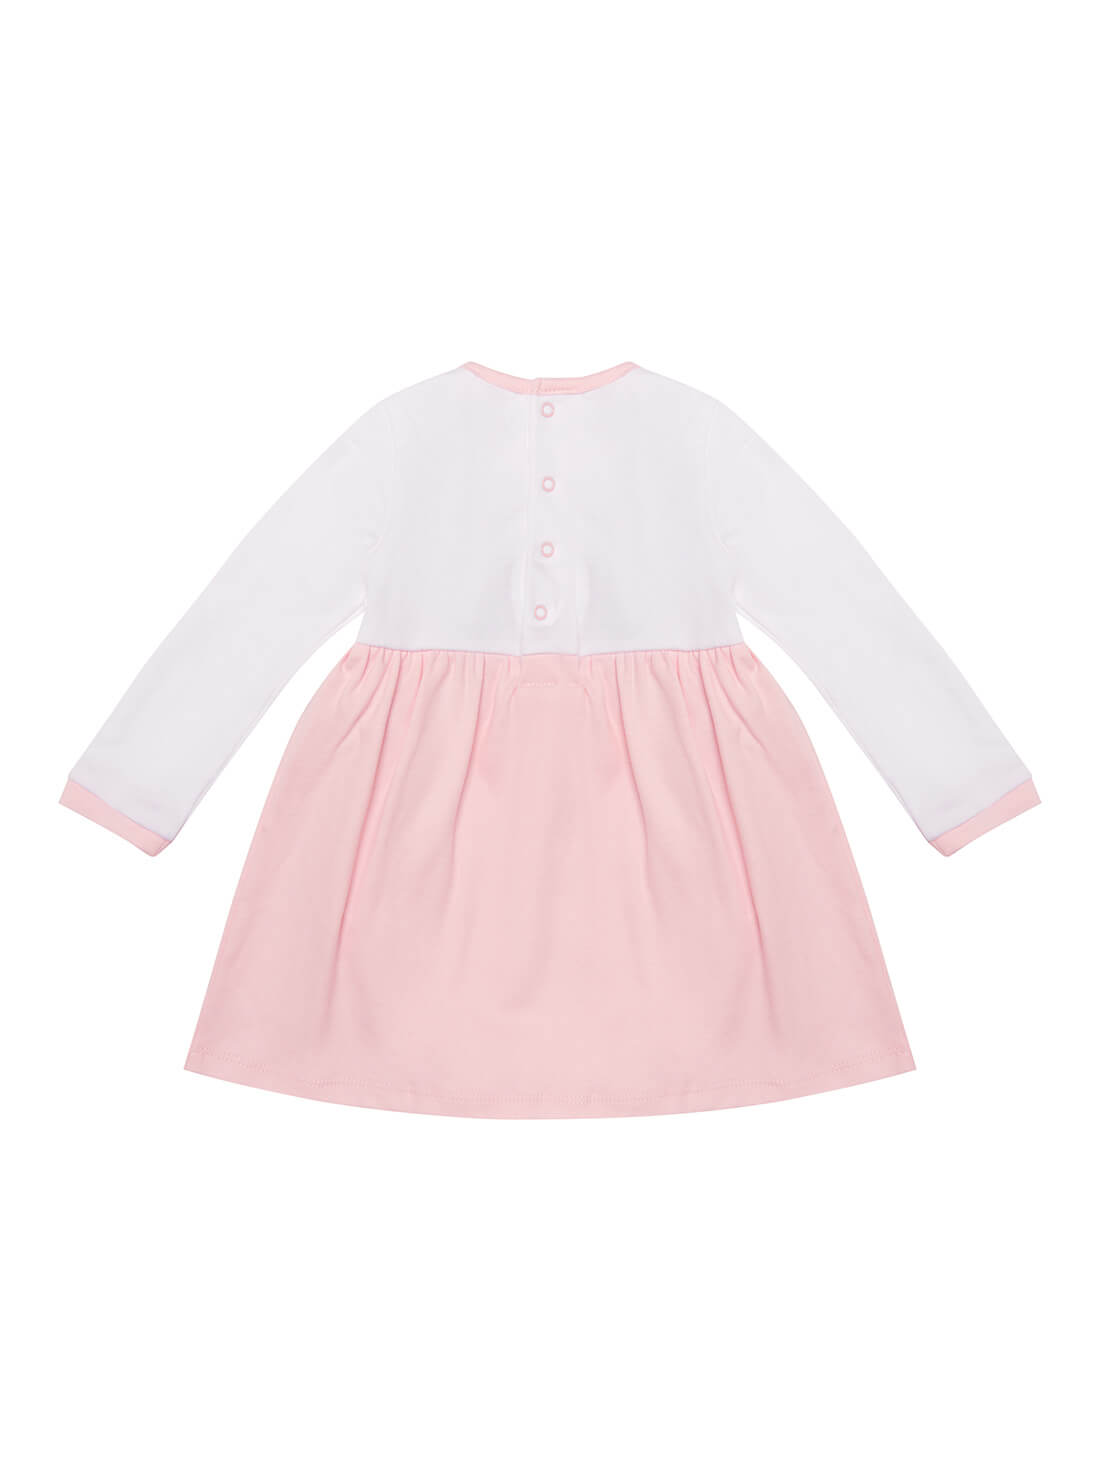 GUESS Baby Girl Pink Ballet Bodysuit Dress (0-12m) S2RG07KA6W0 Back View